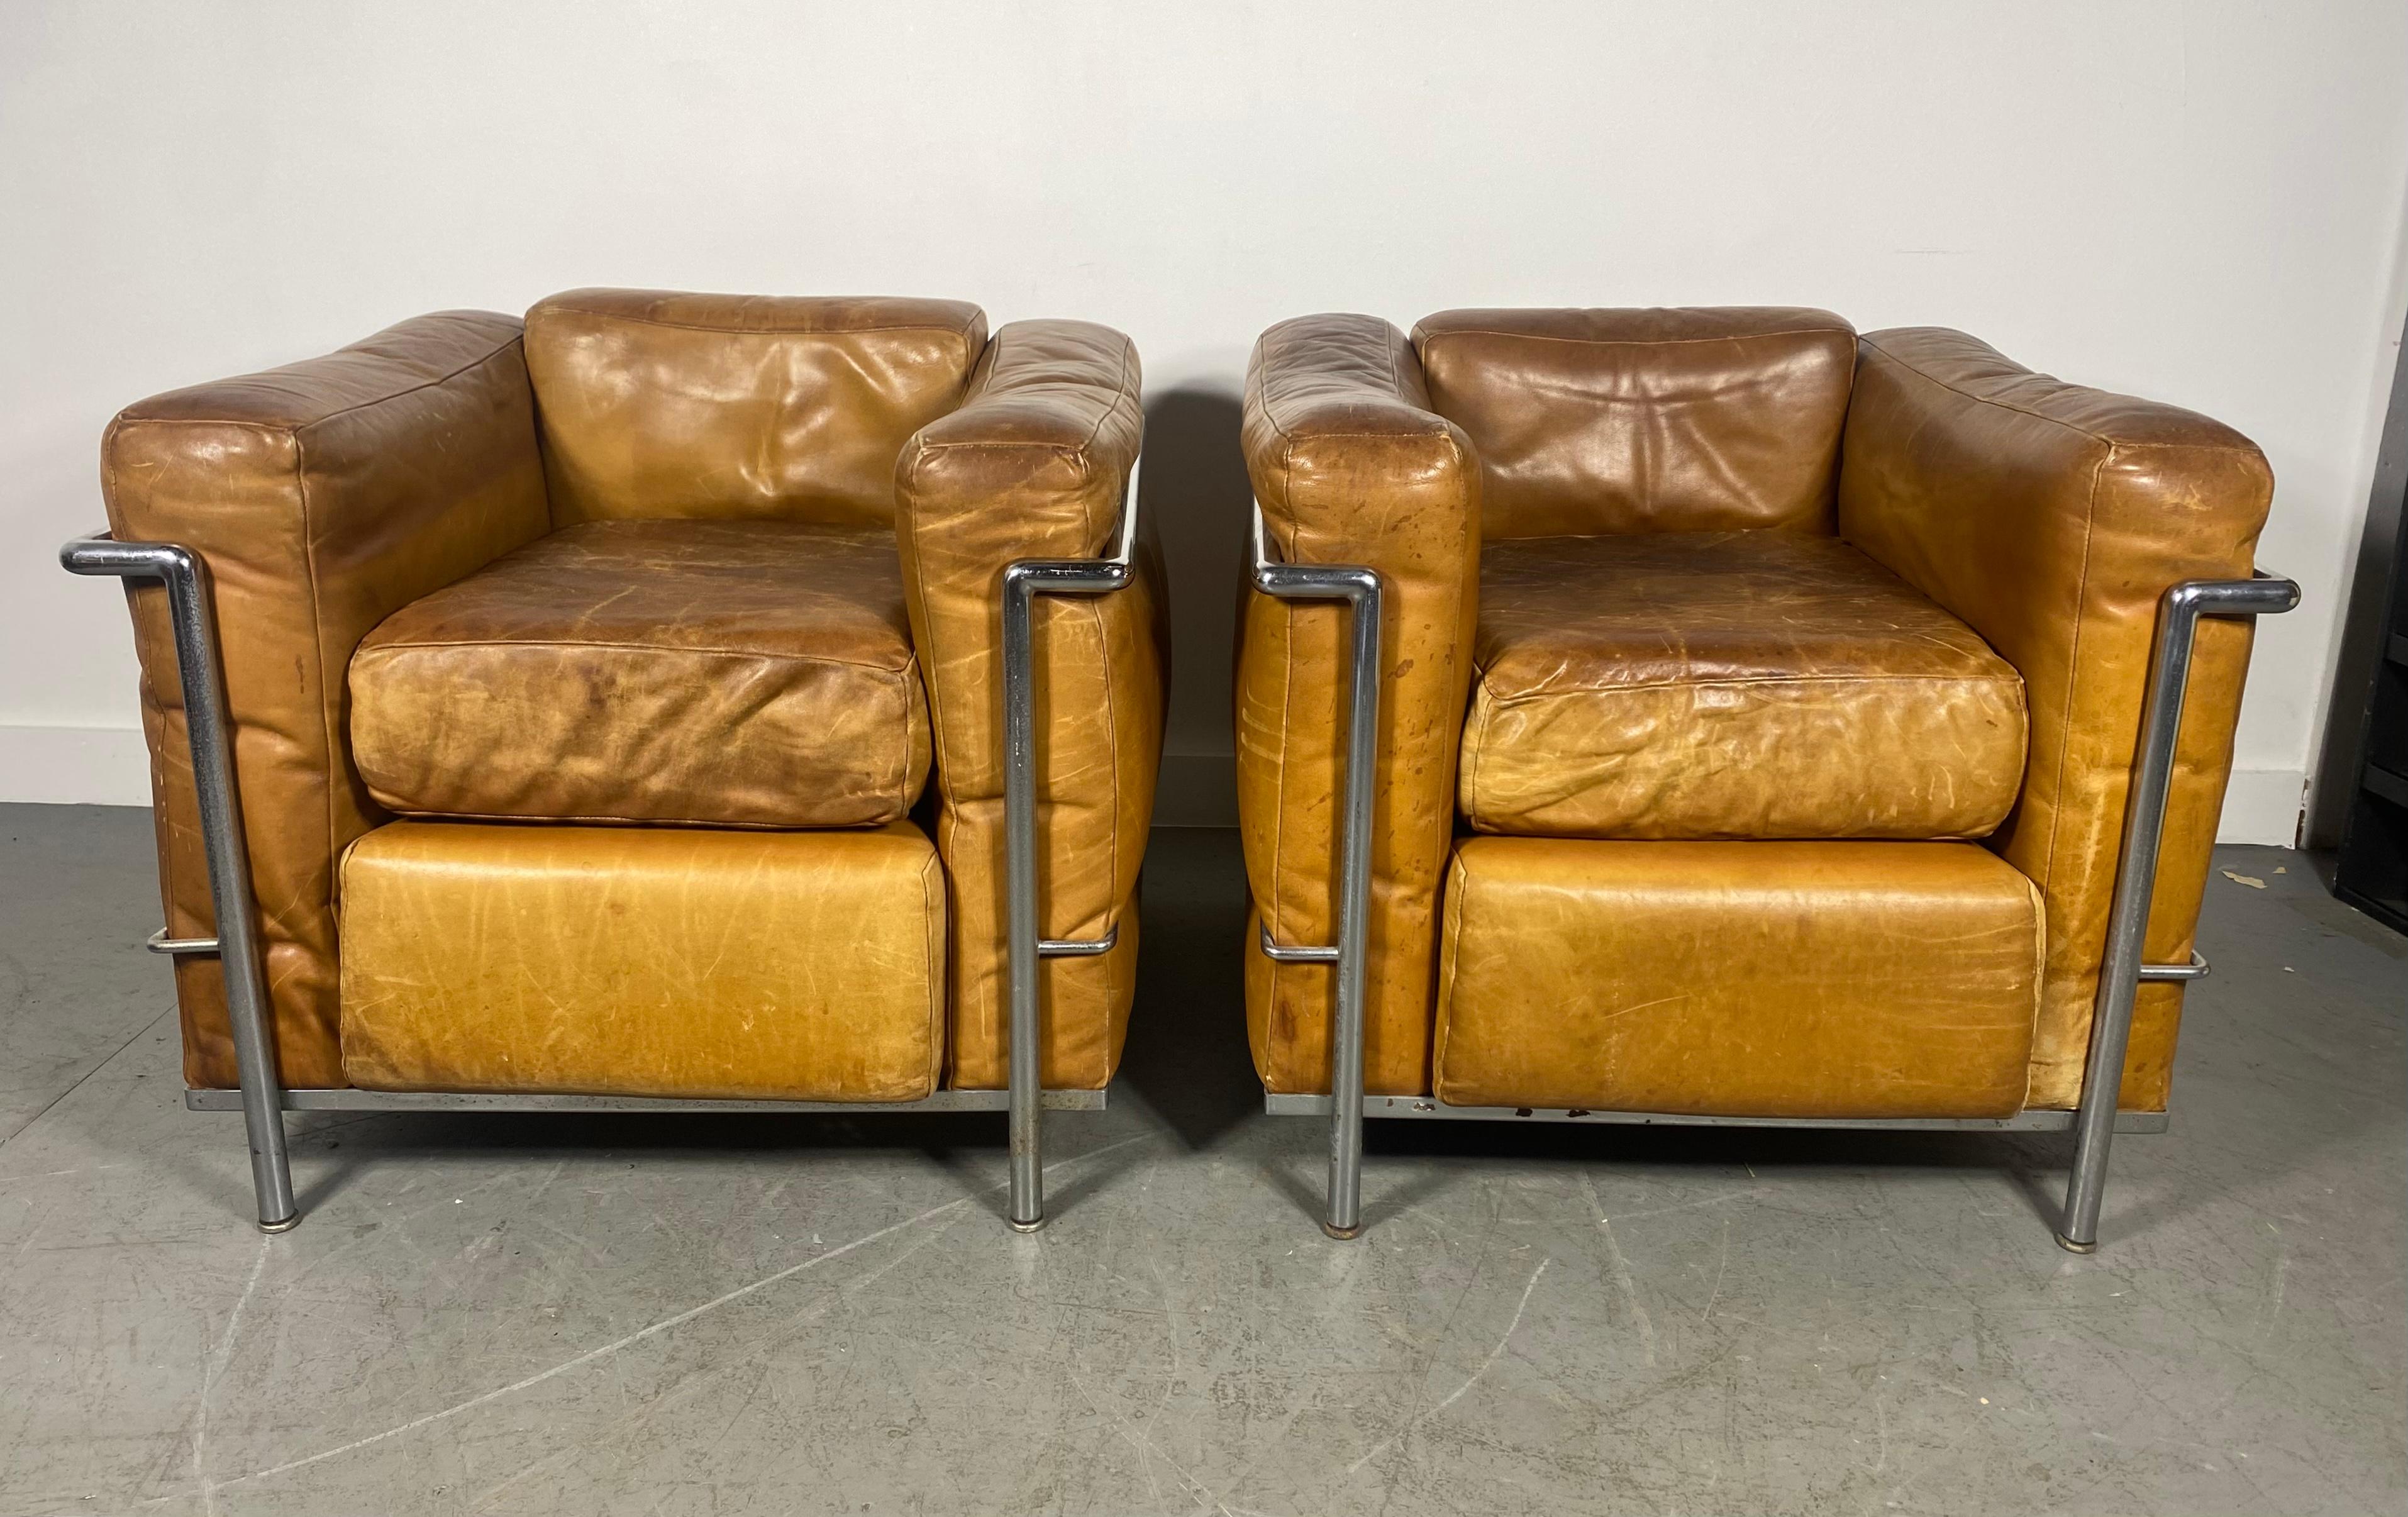 Très ancienne paire de  Fauteuil LC2 Petite Modele Dessiné par Le Corbusier, Pierre Jeanneret, Charlotte Perriand, fabriqué en Italie avec des coussins en cuir marron d'origine et une structure chromée. Les chaises sont en bon état général, patine